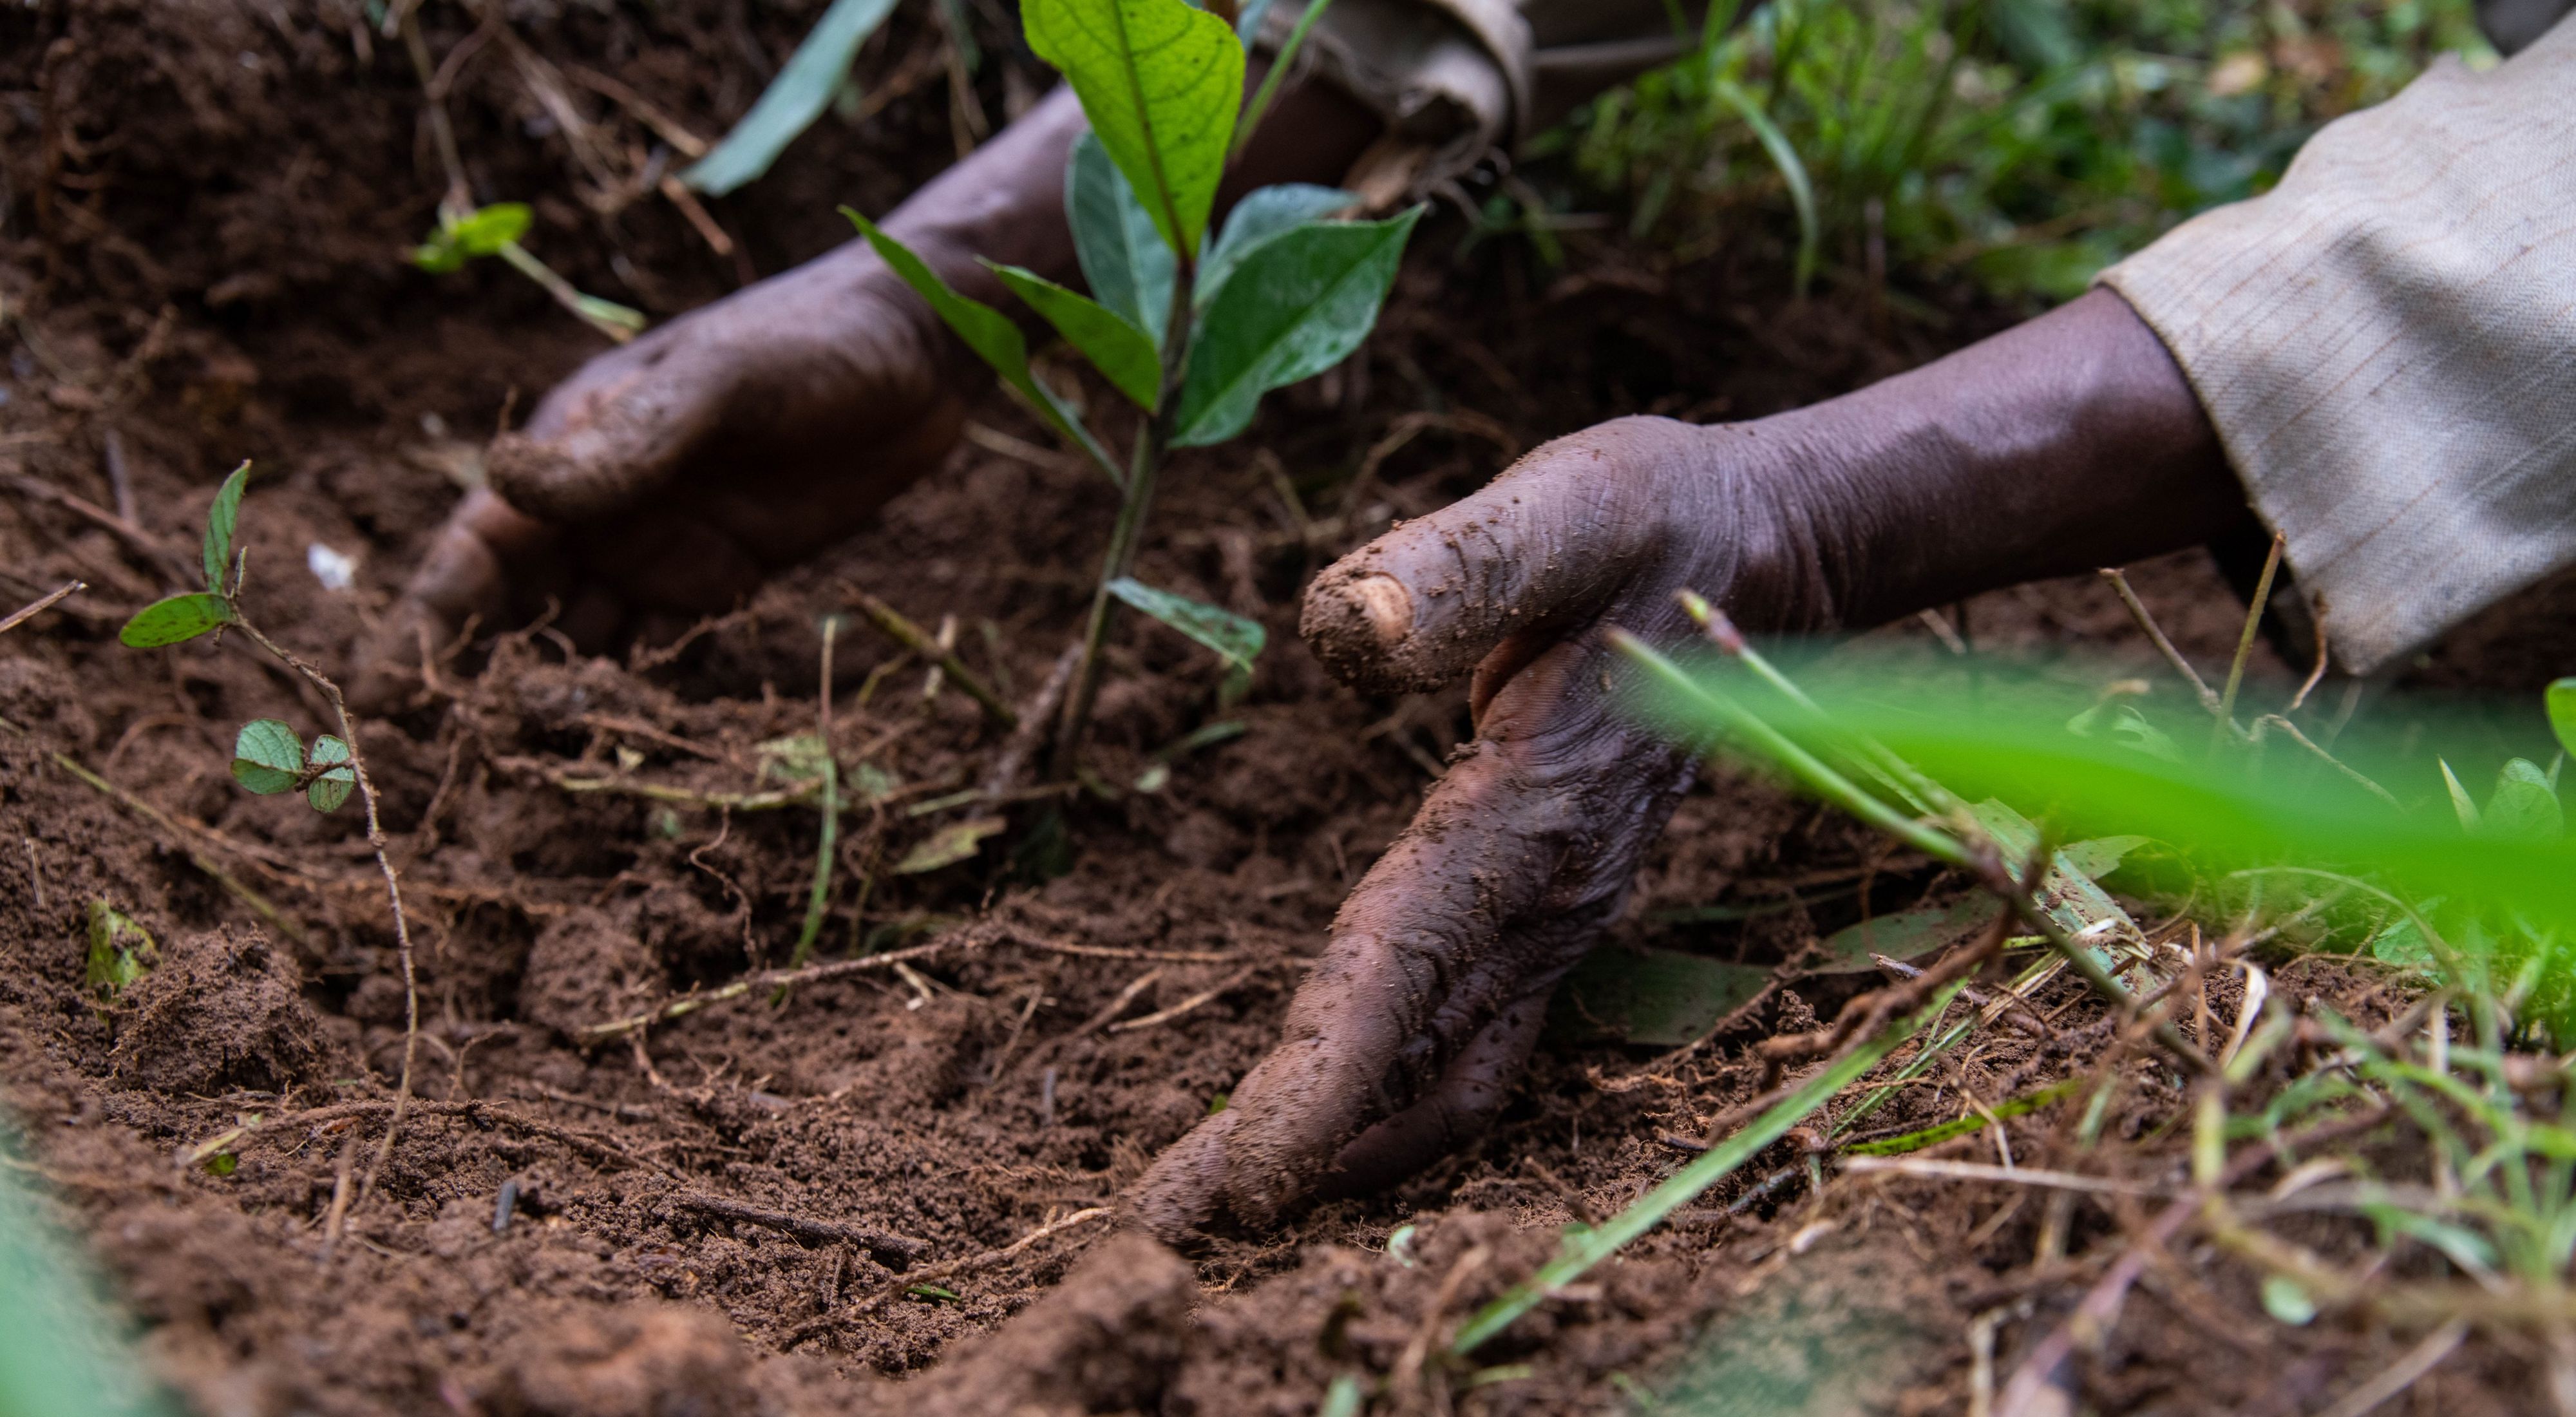 Cash Crop & Pay Dirt Potting Soil, Plant Nutrients